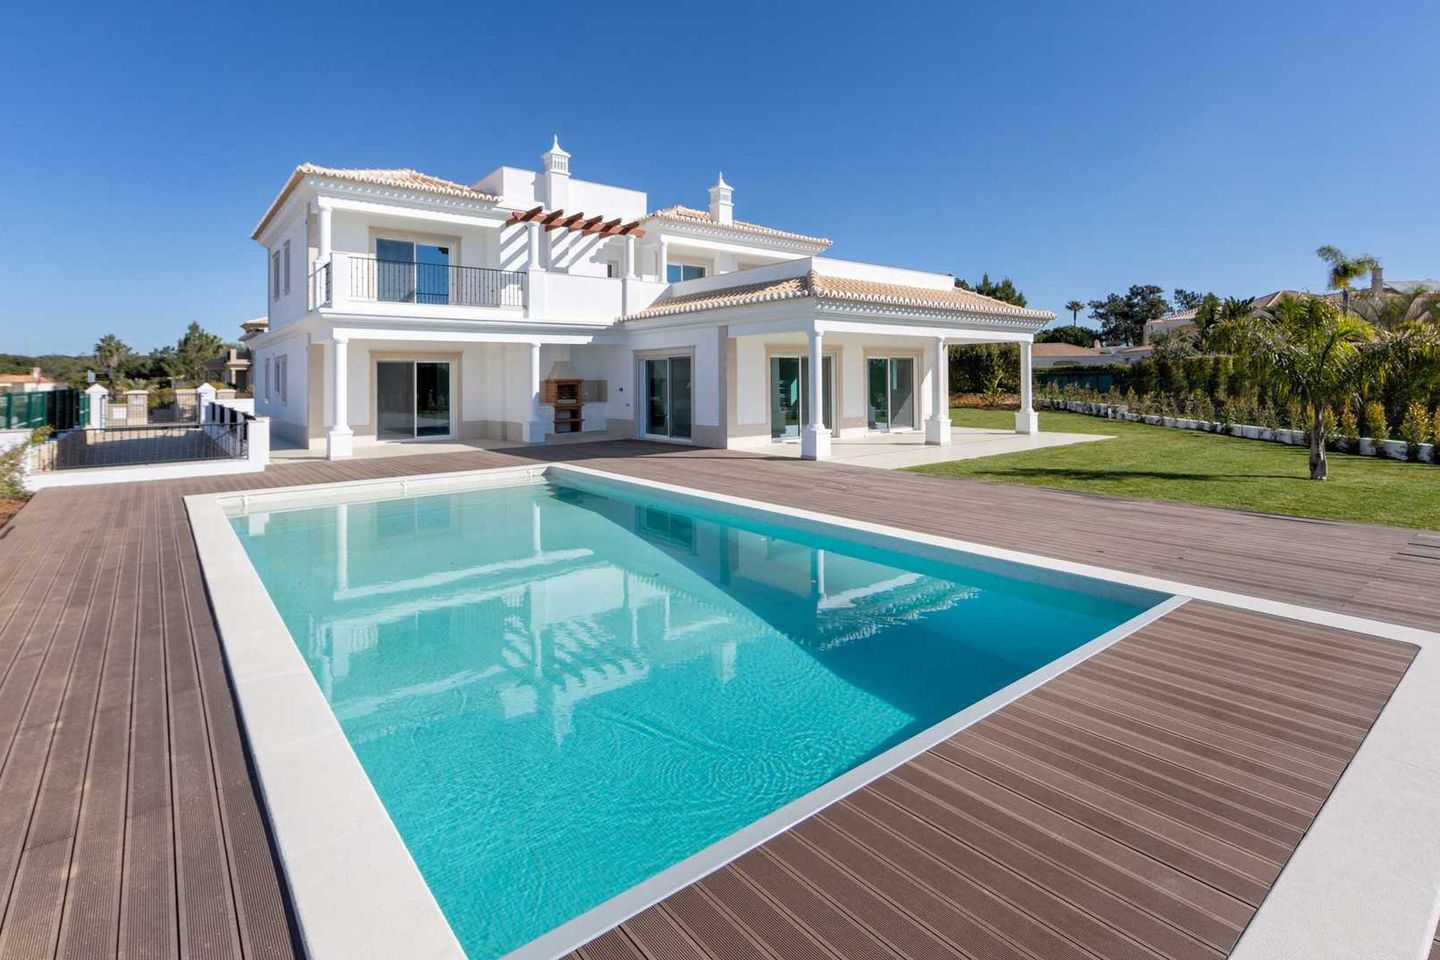 Villa in Vilamoura, Portugal, Vilamoura, Portugal